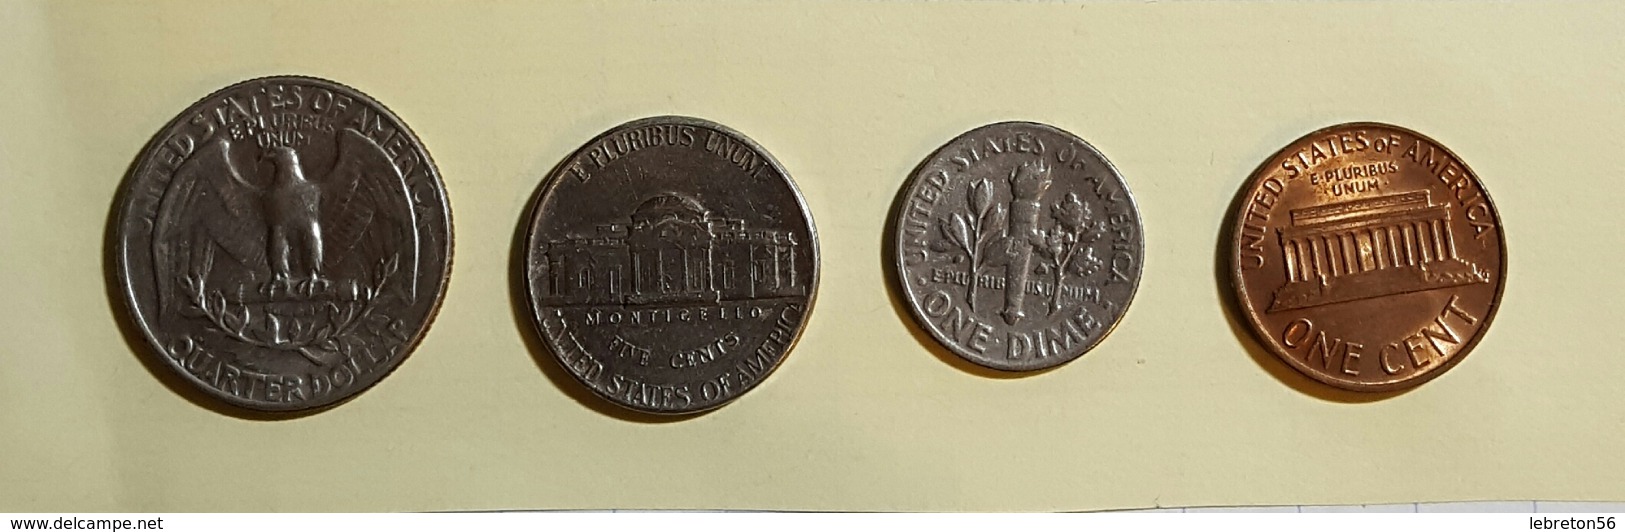 Etats Unis Quater Dollards 1967 Five Cent 1972 One Dime 1966 On Cent1976 Voir Les Deux Photos - Alla Rinfusa - Monete